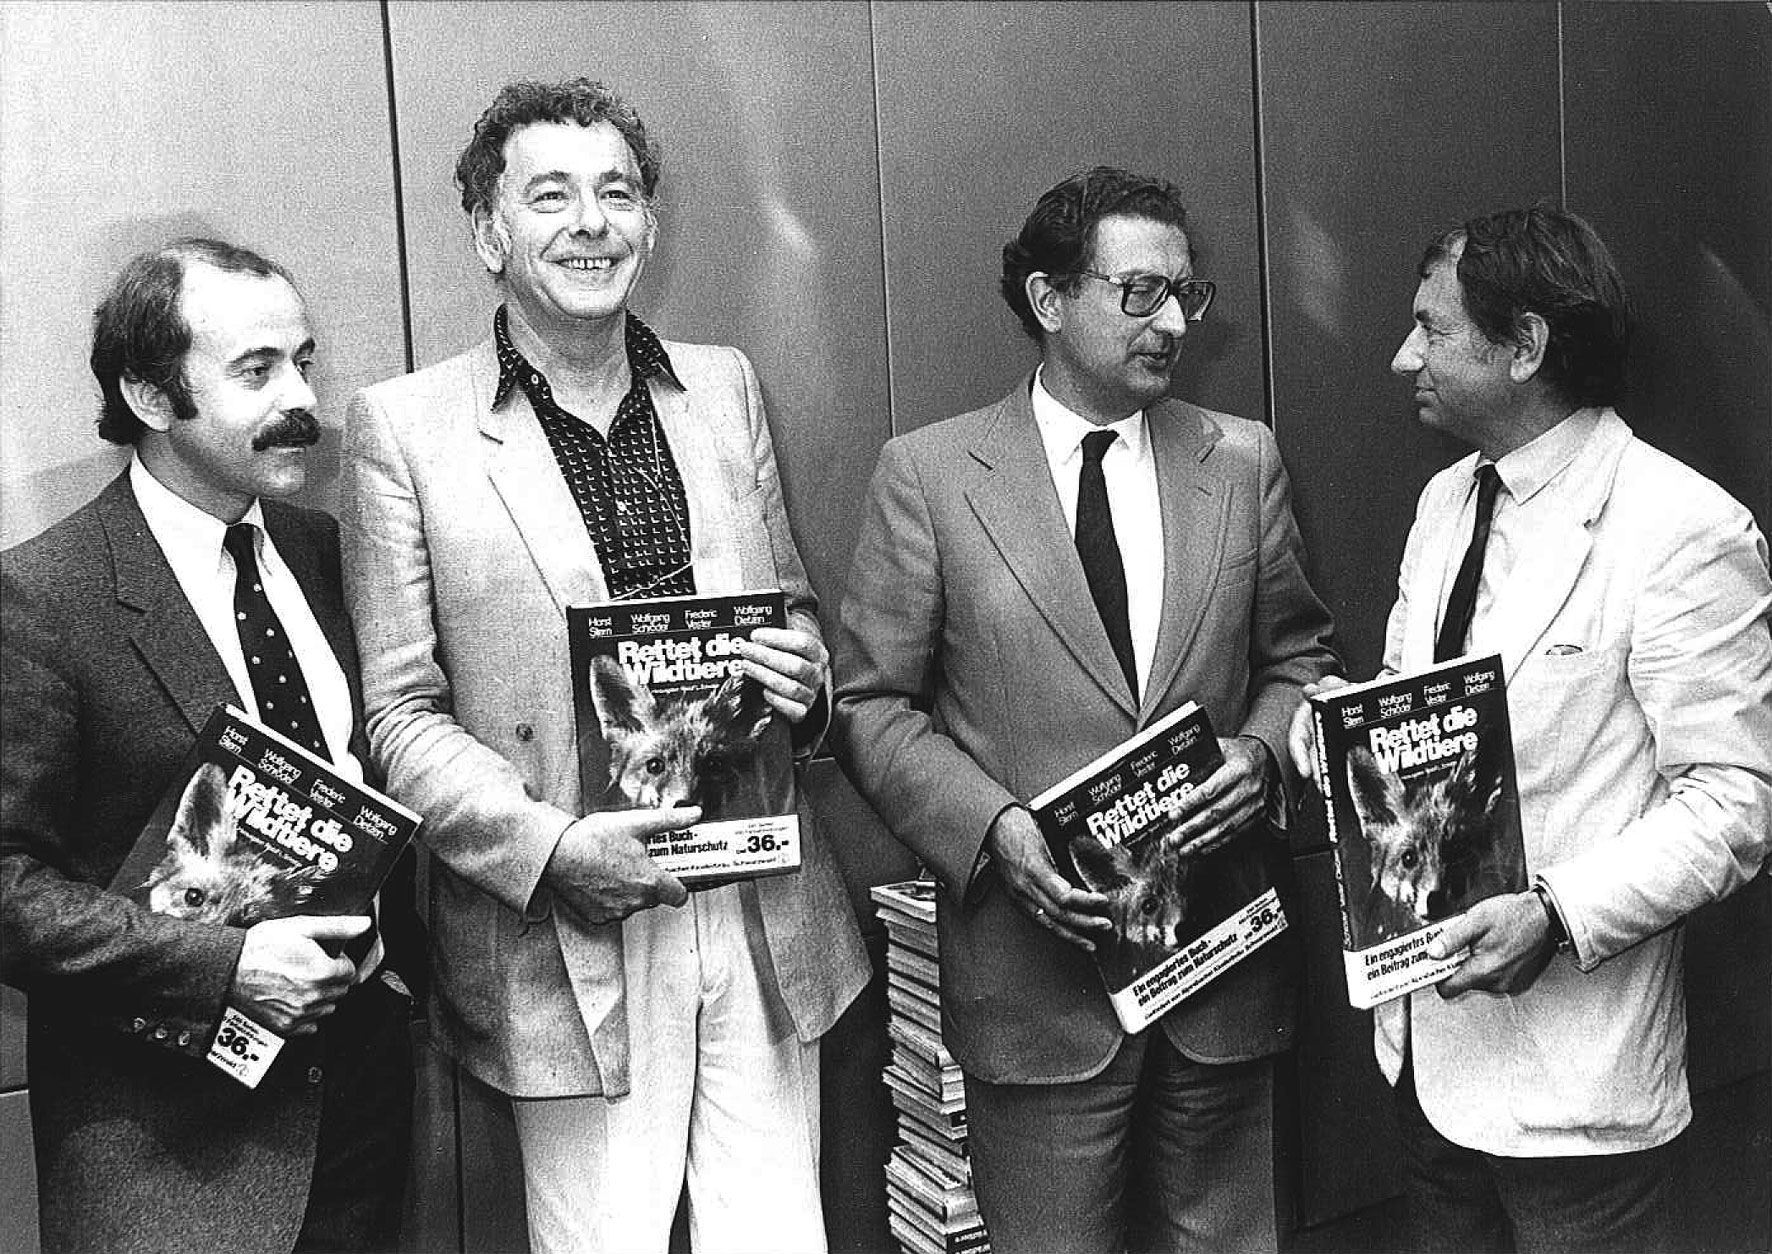 Promotion der Kampagne Rettet die Wildtiere 1980: v.l.n.r. Rudolf L. Schreiber, Frederic Vester, Innenminister Gerhart Baum, Horst Stern